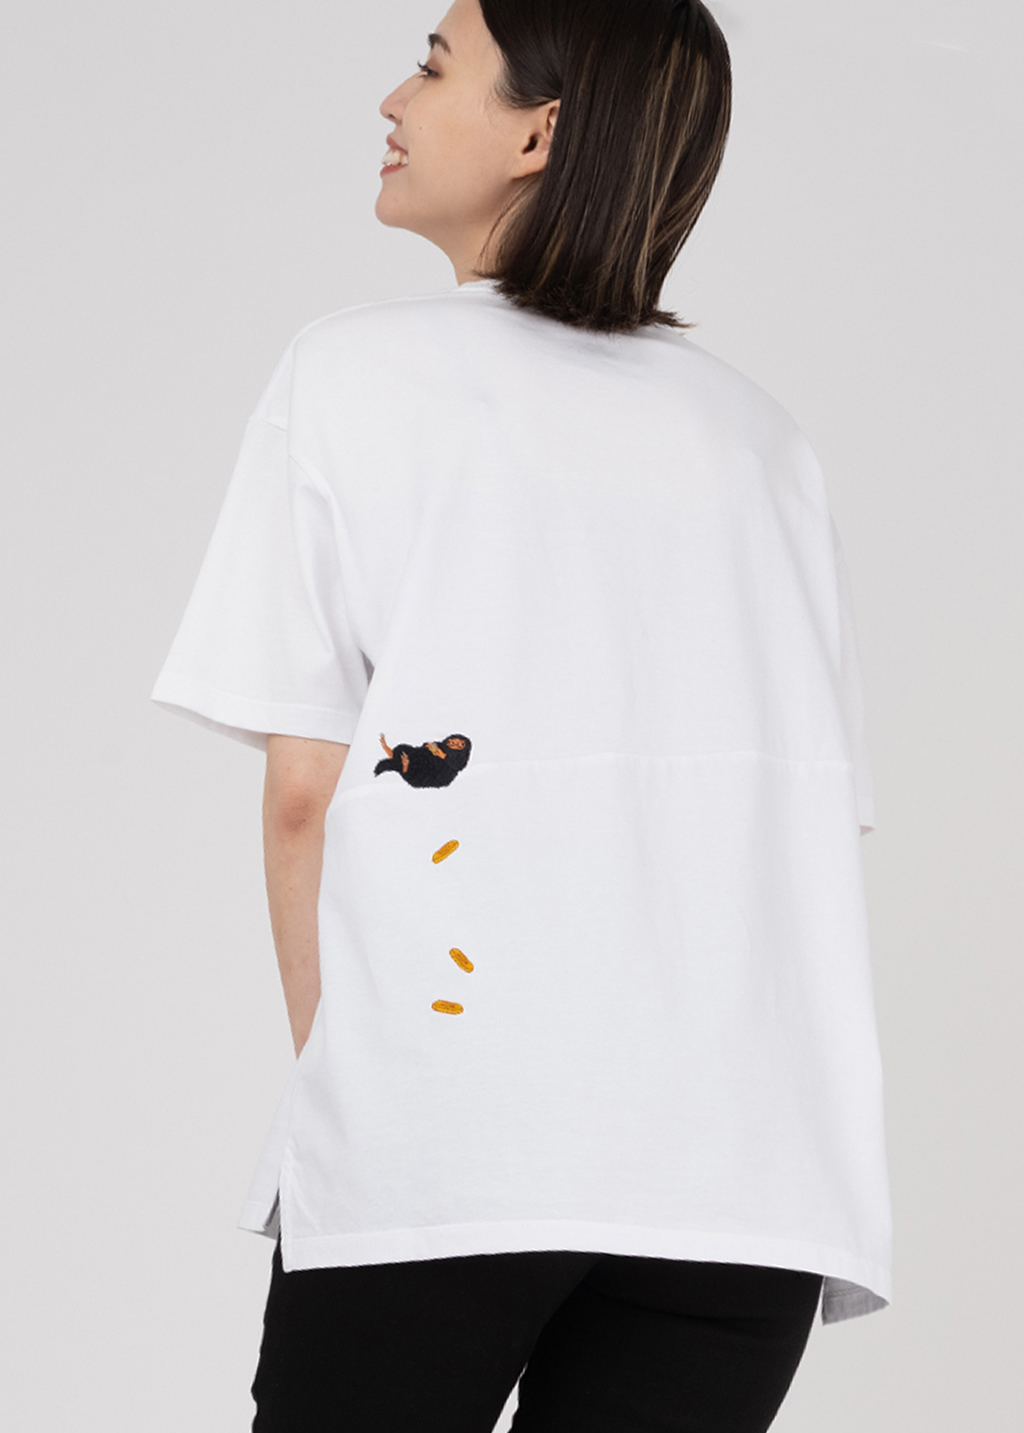  ファンタビ Tシャツ「ニフラー」3,500円(税込)(サイズ：S/M/L) グラニフ